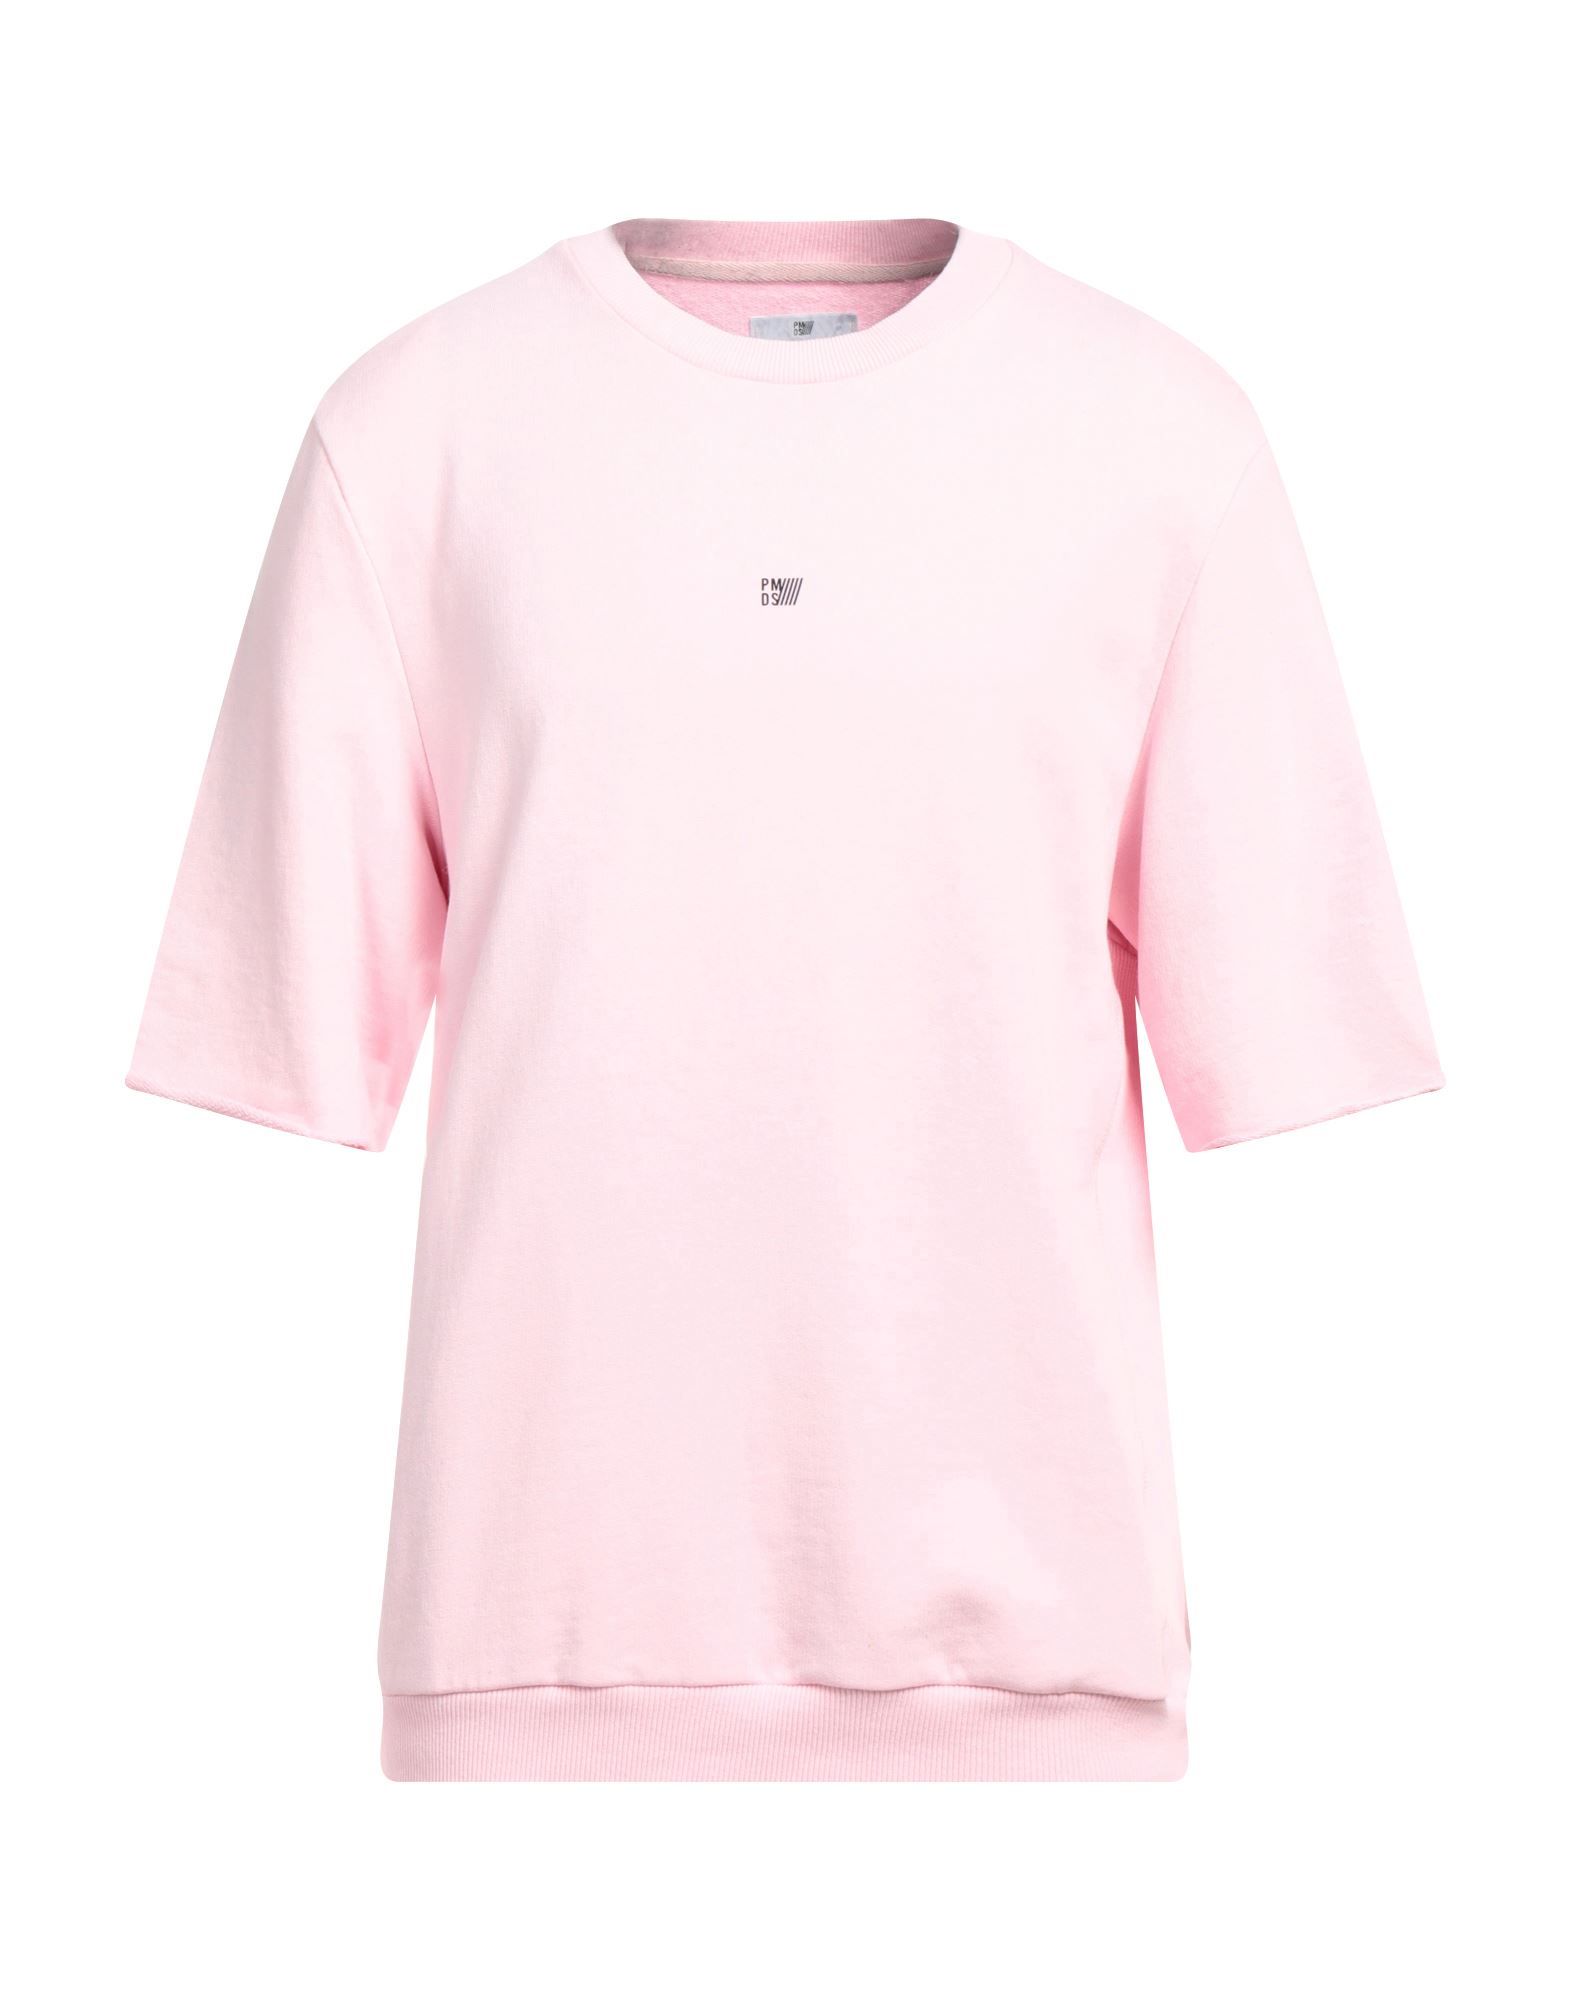 Pmds Premium Mood Denim Superior Sweatshirts In Pink